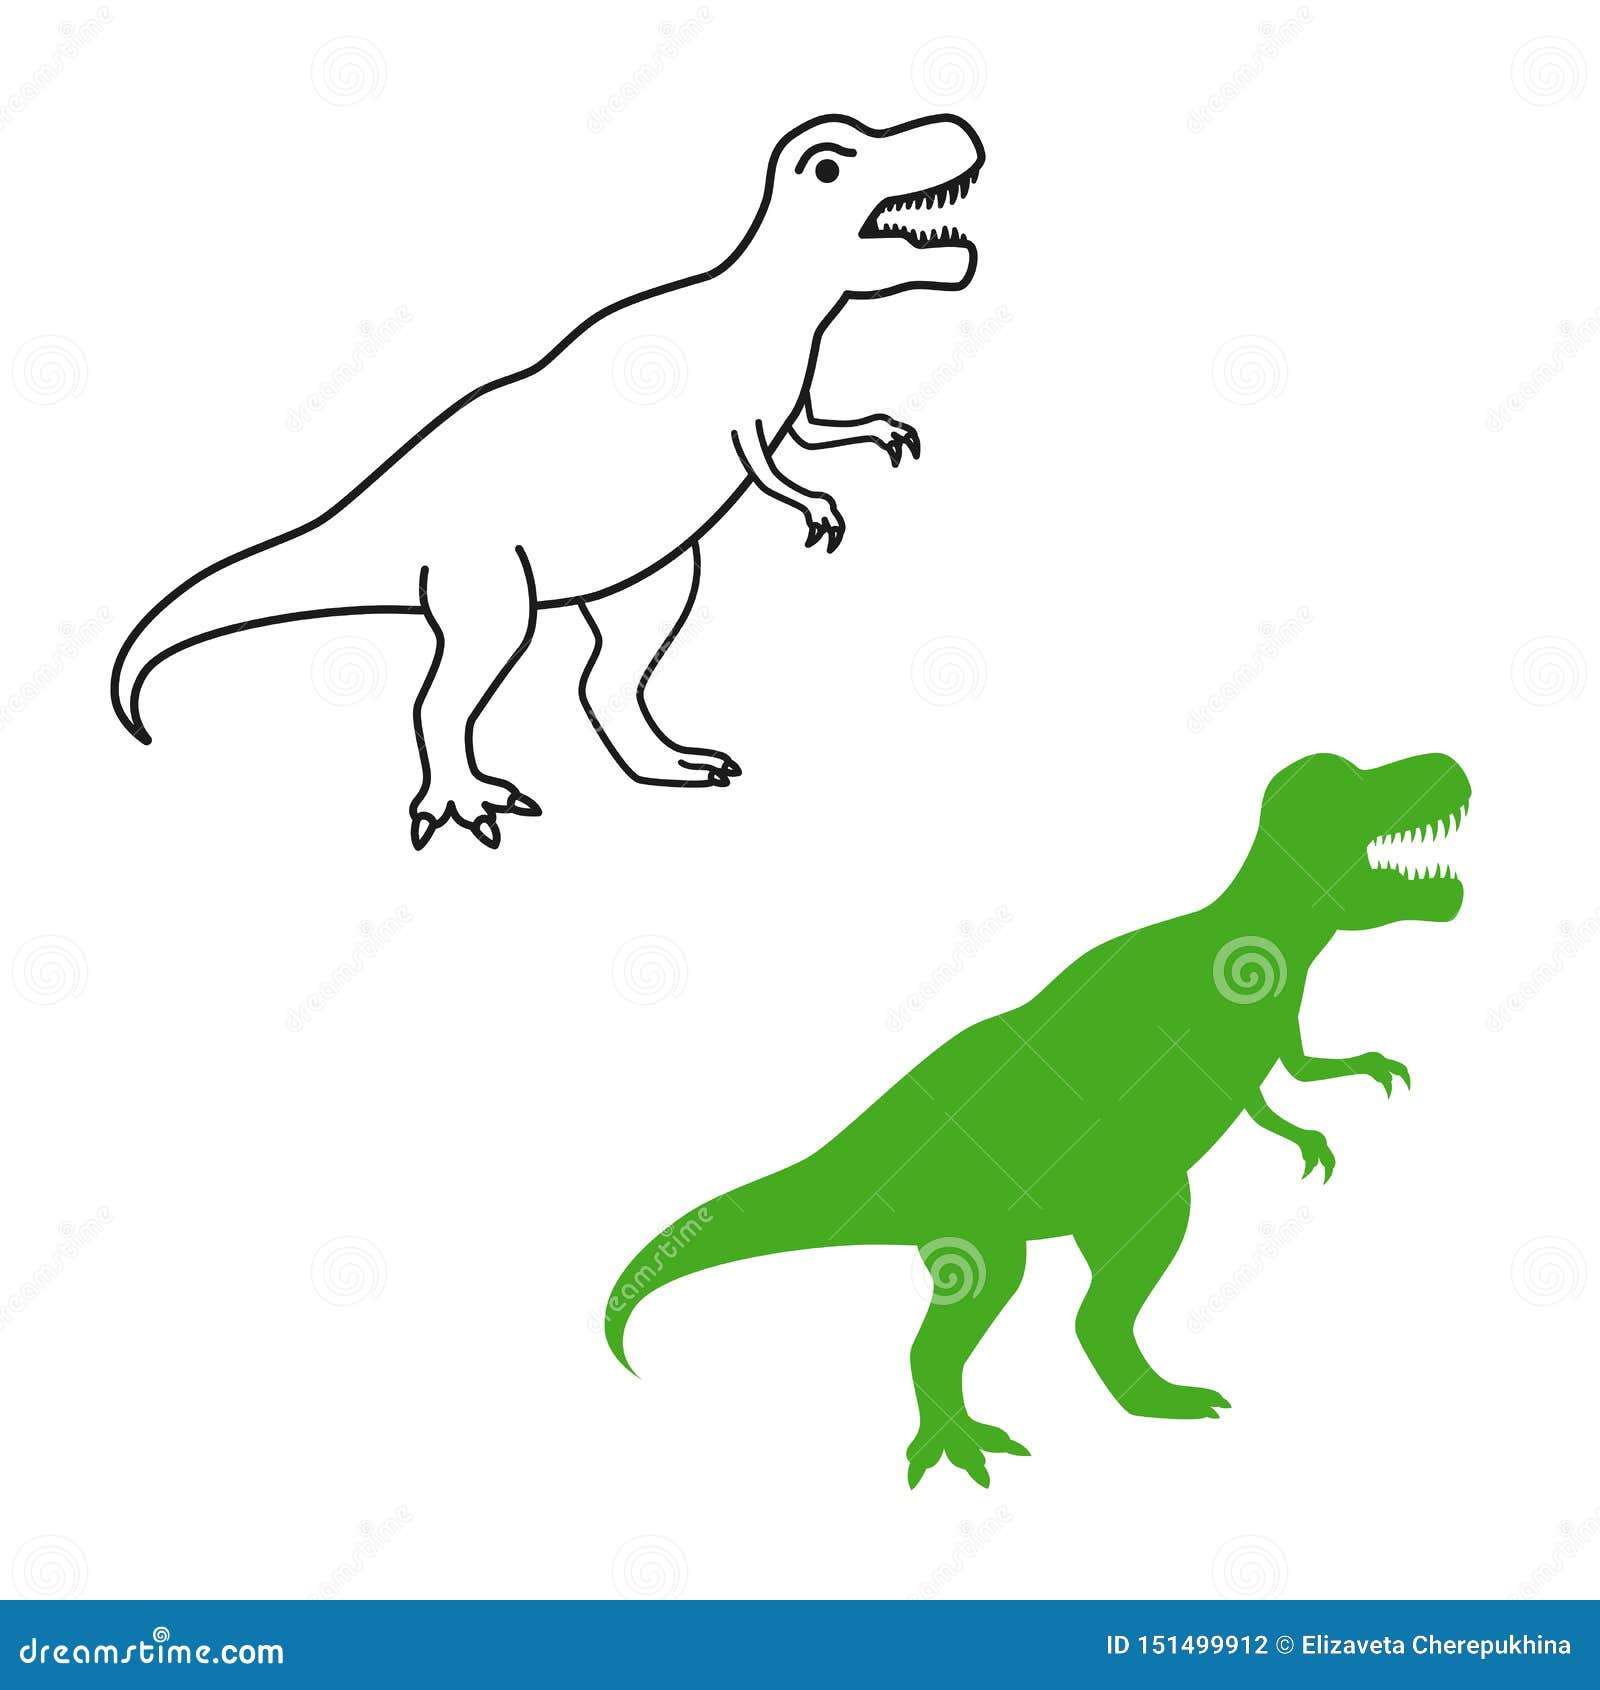 Vetores de Ilustração Do Tiranossauro Rex Silhueta Preta E Branca